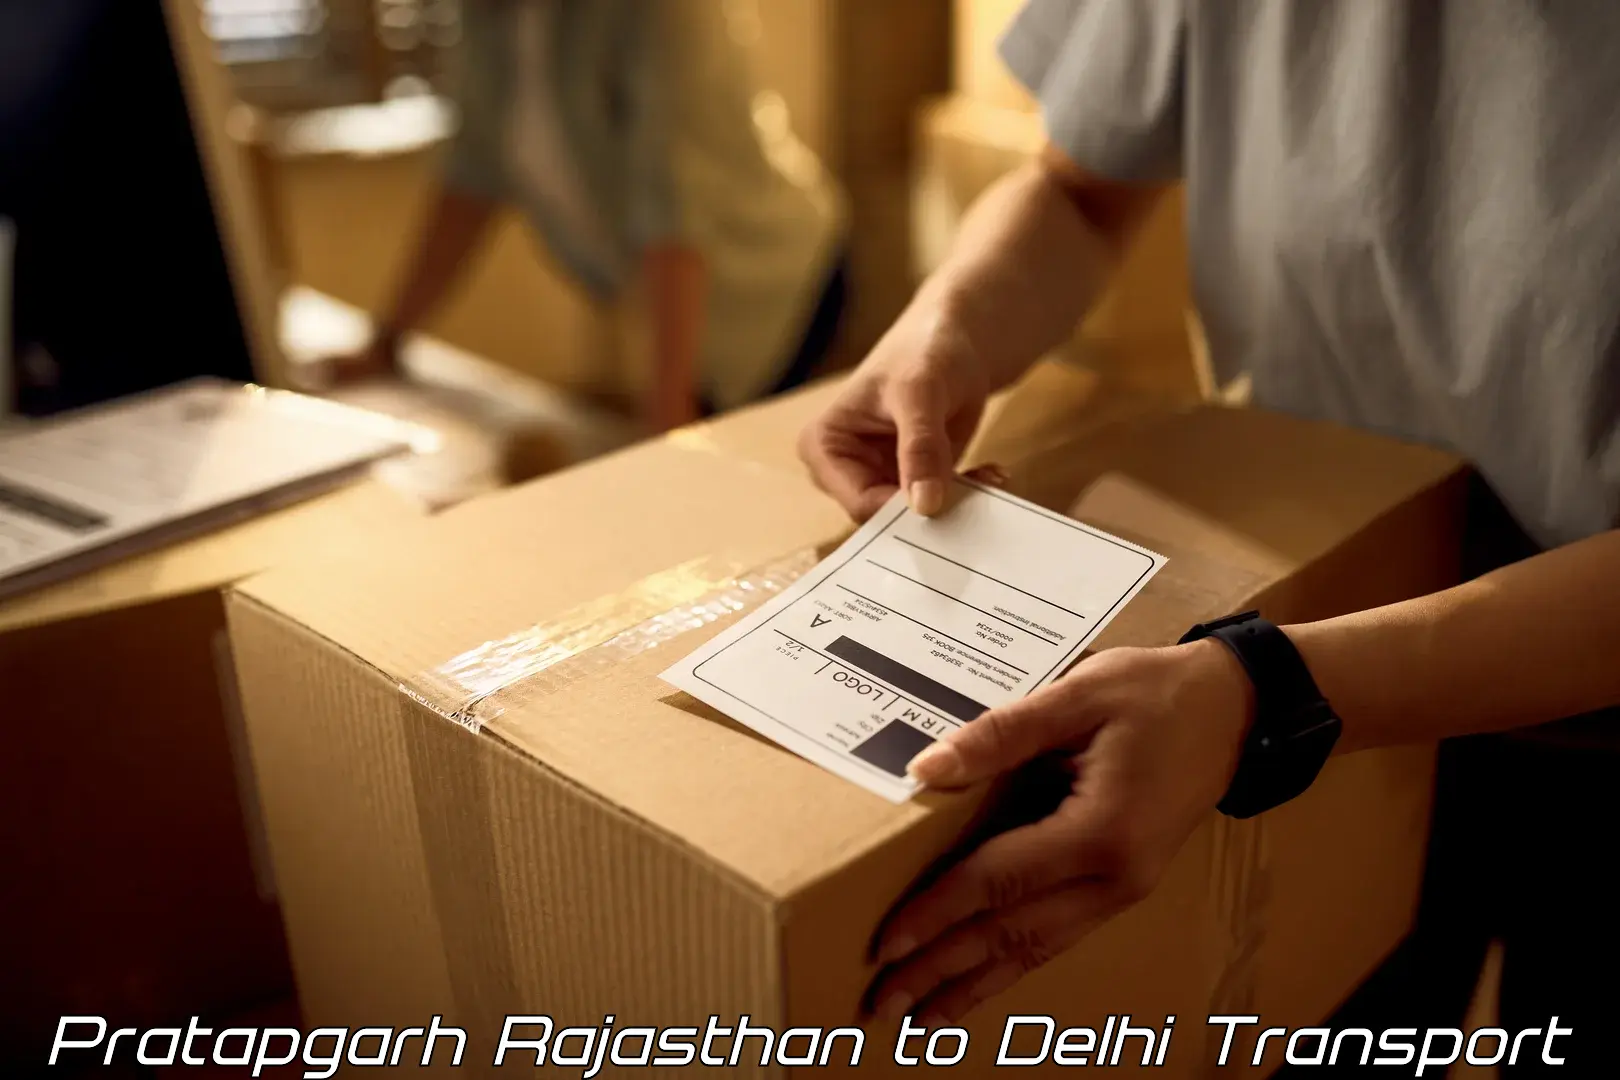 Air freight transport services Pratapgarh Rajasthan to Delhi